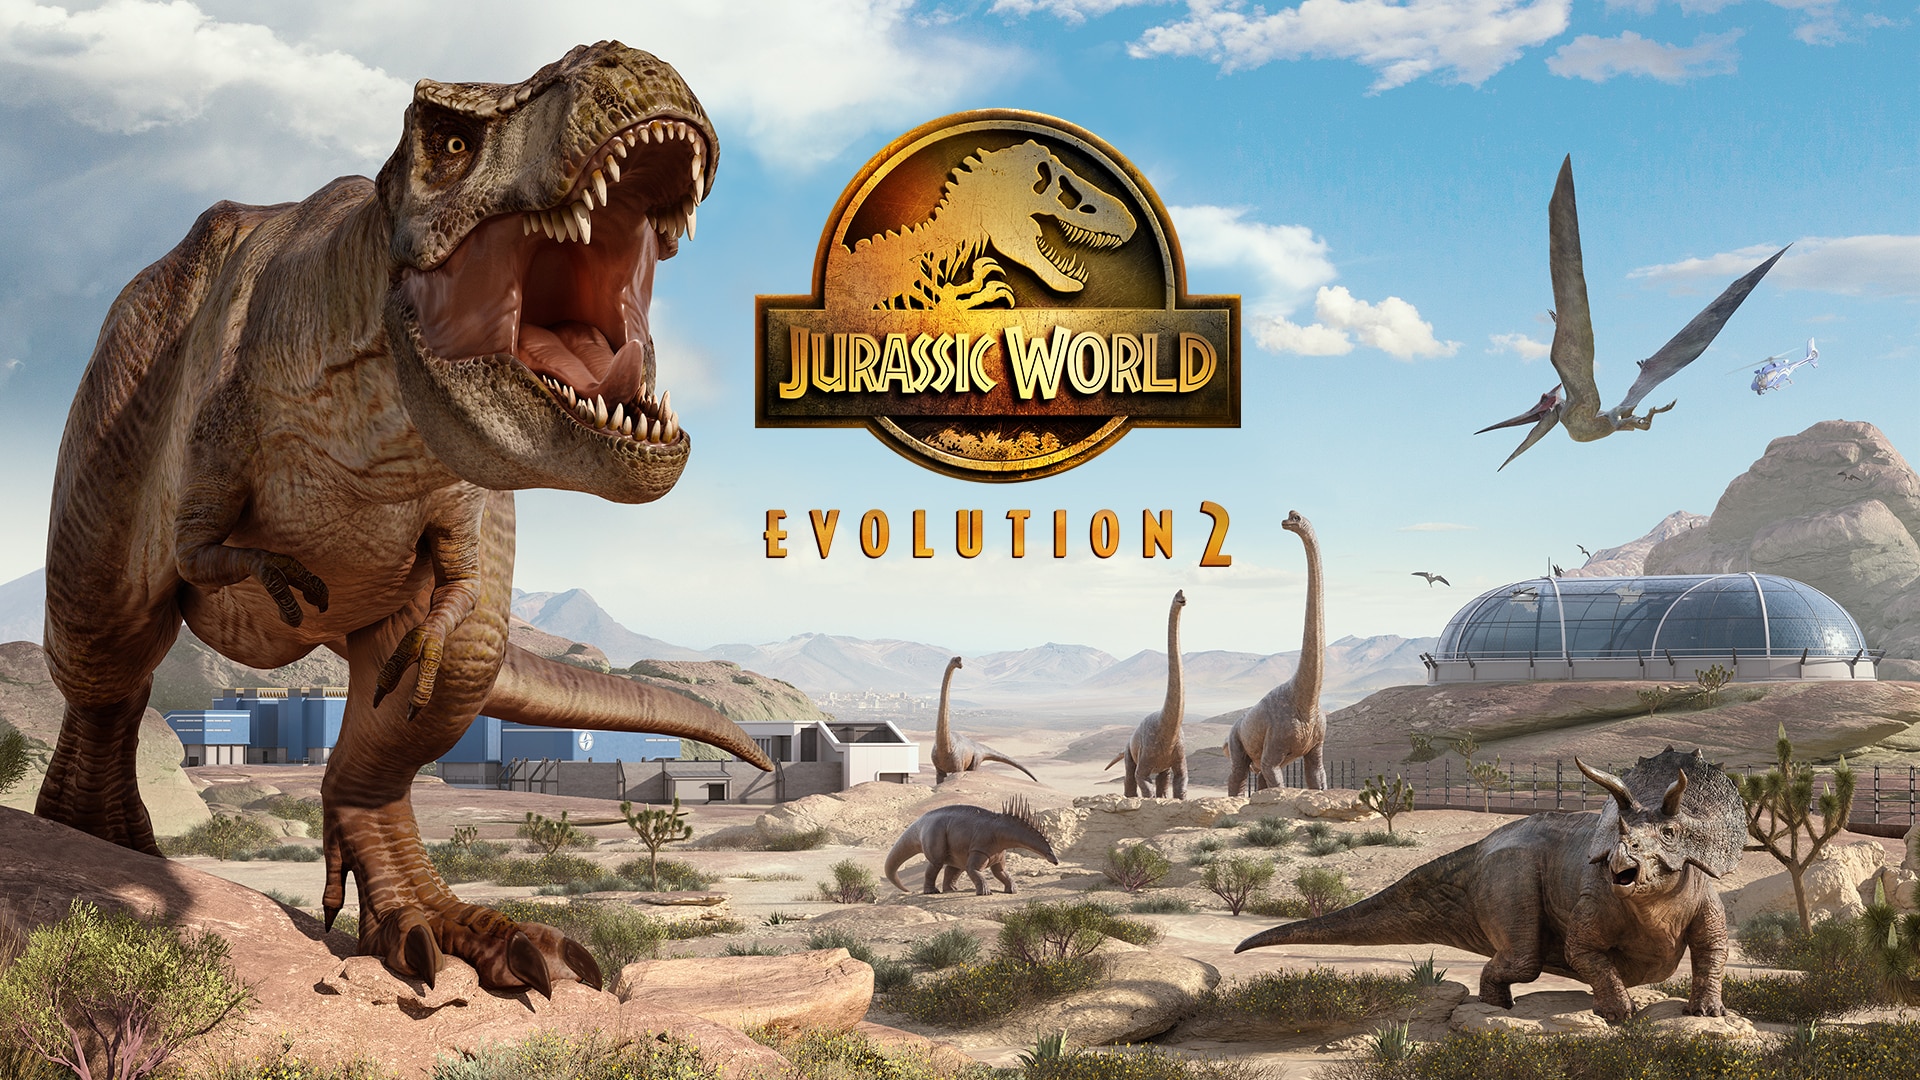 Jurassic World Evolution 2 Official Artwork